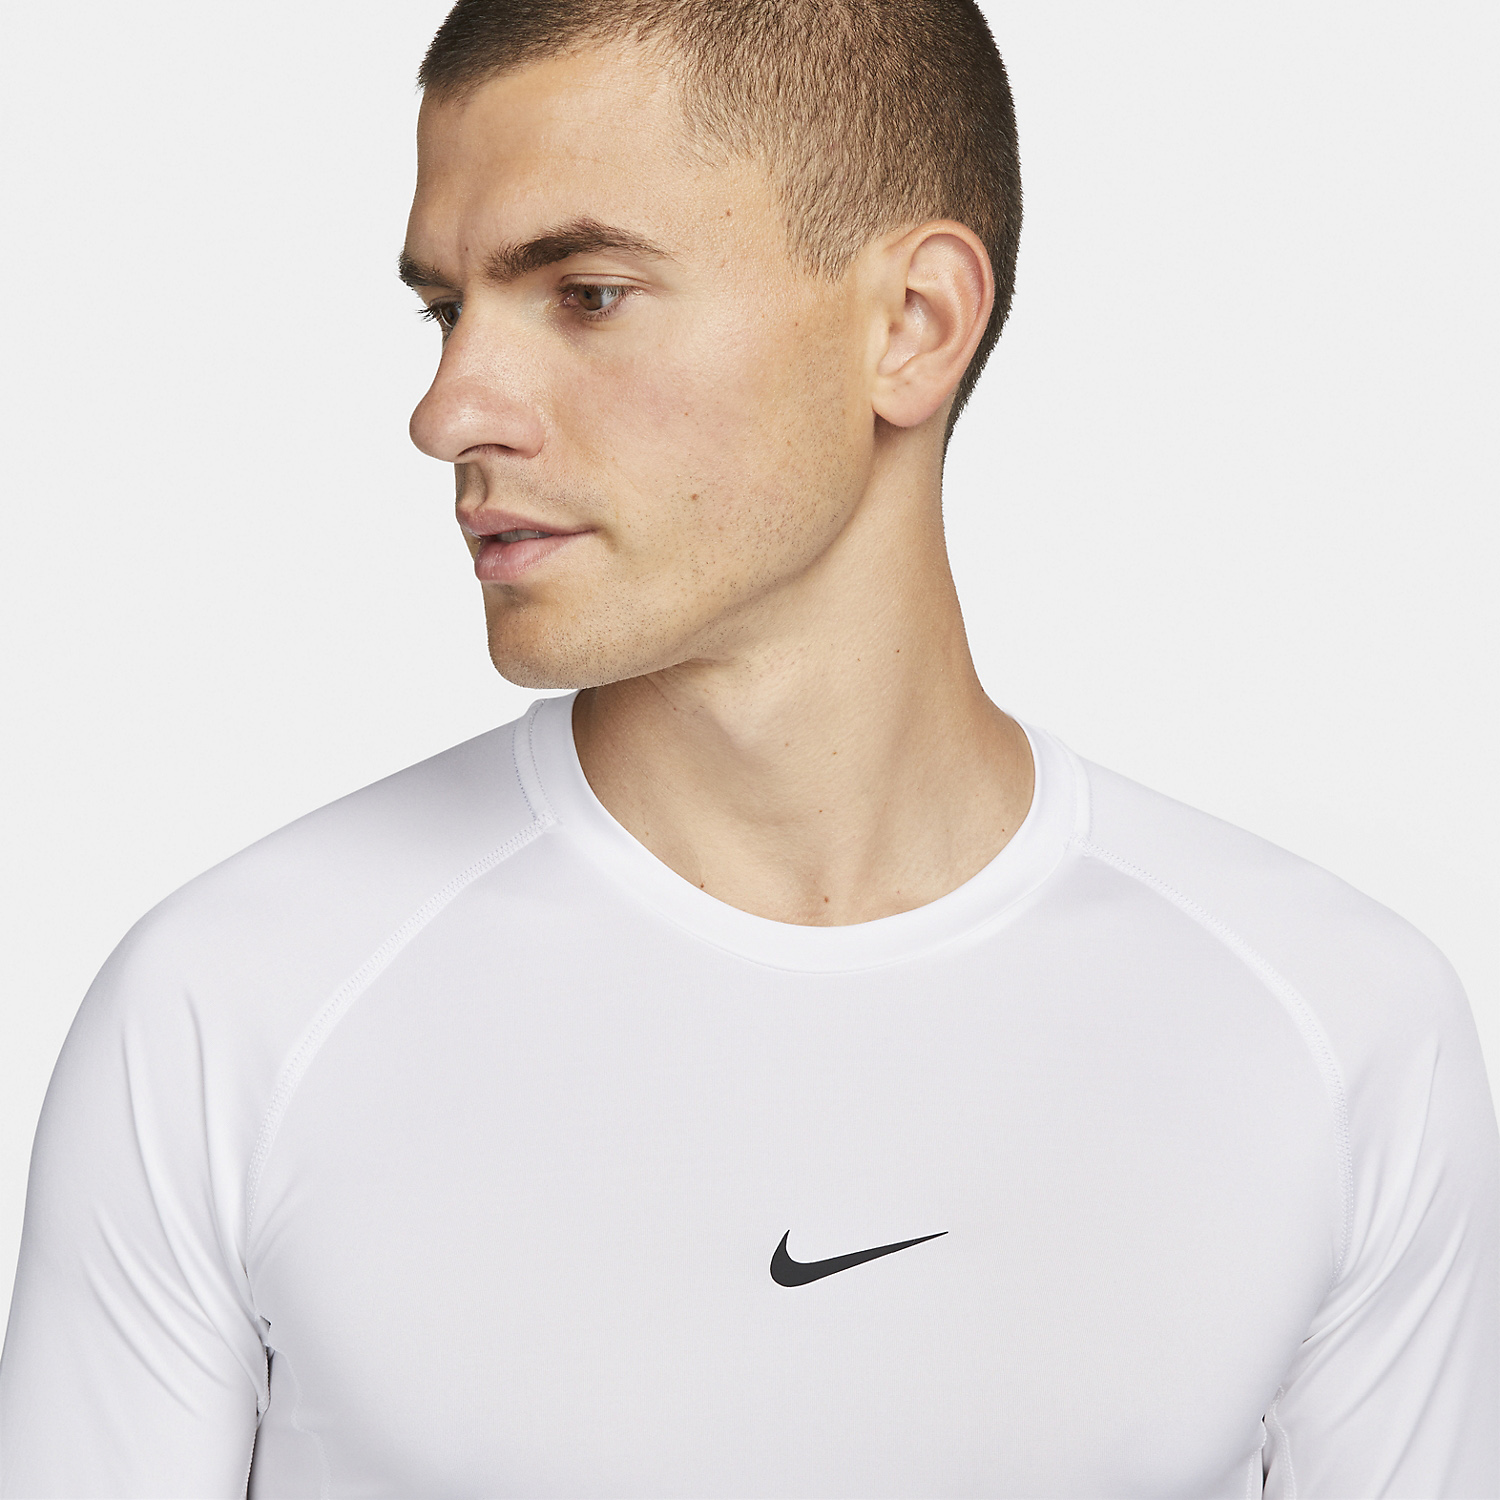 Nike Dri-FIT Pro Men's Tennis Shirt - White/Black